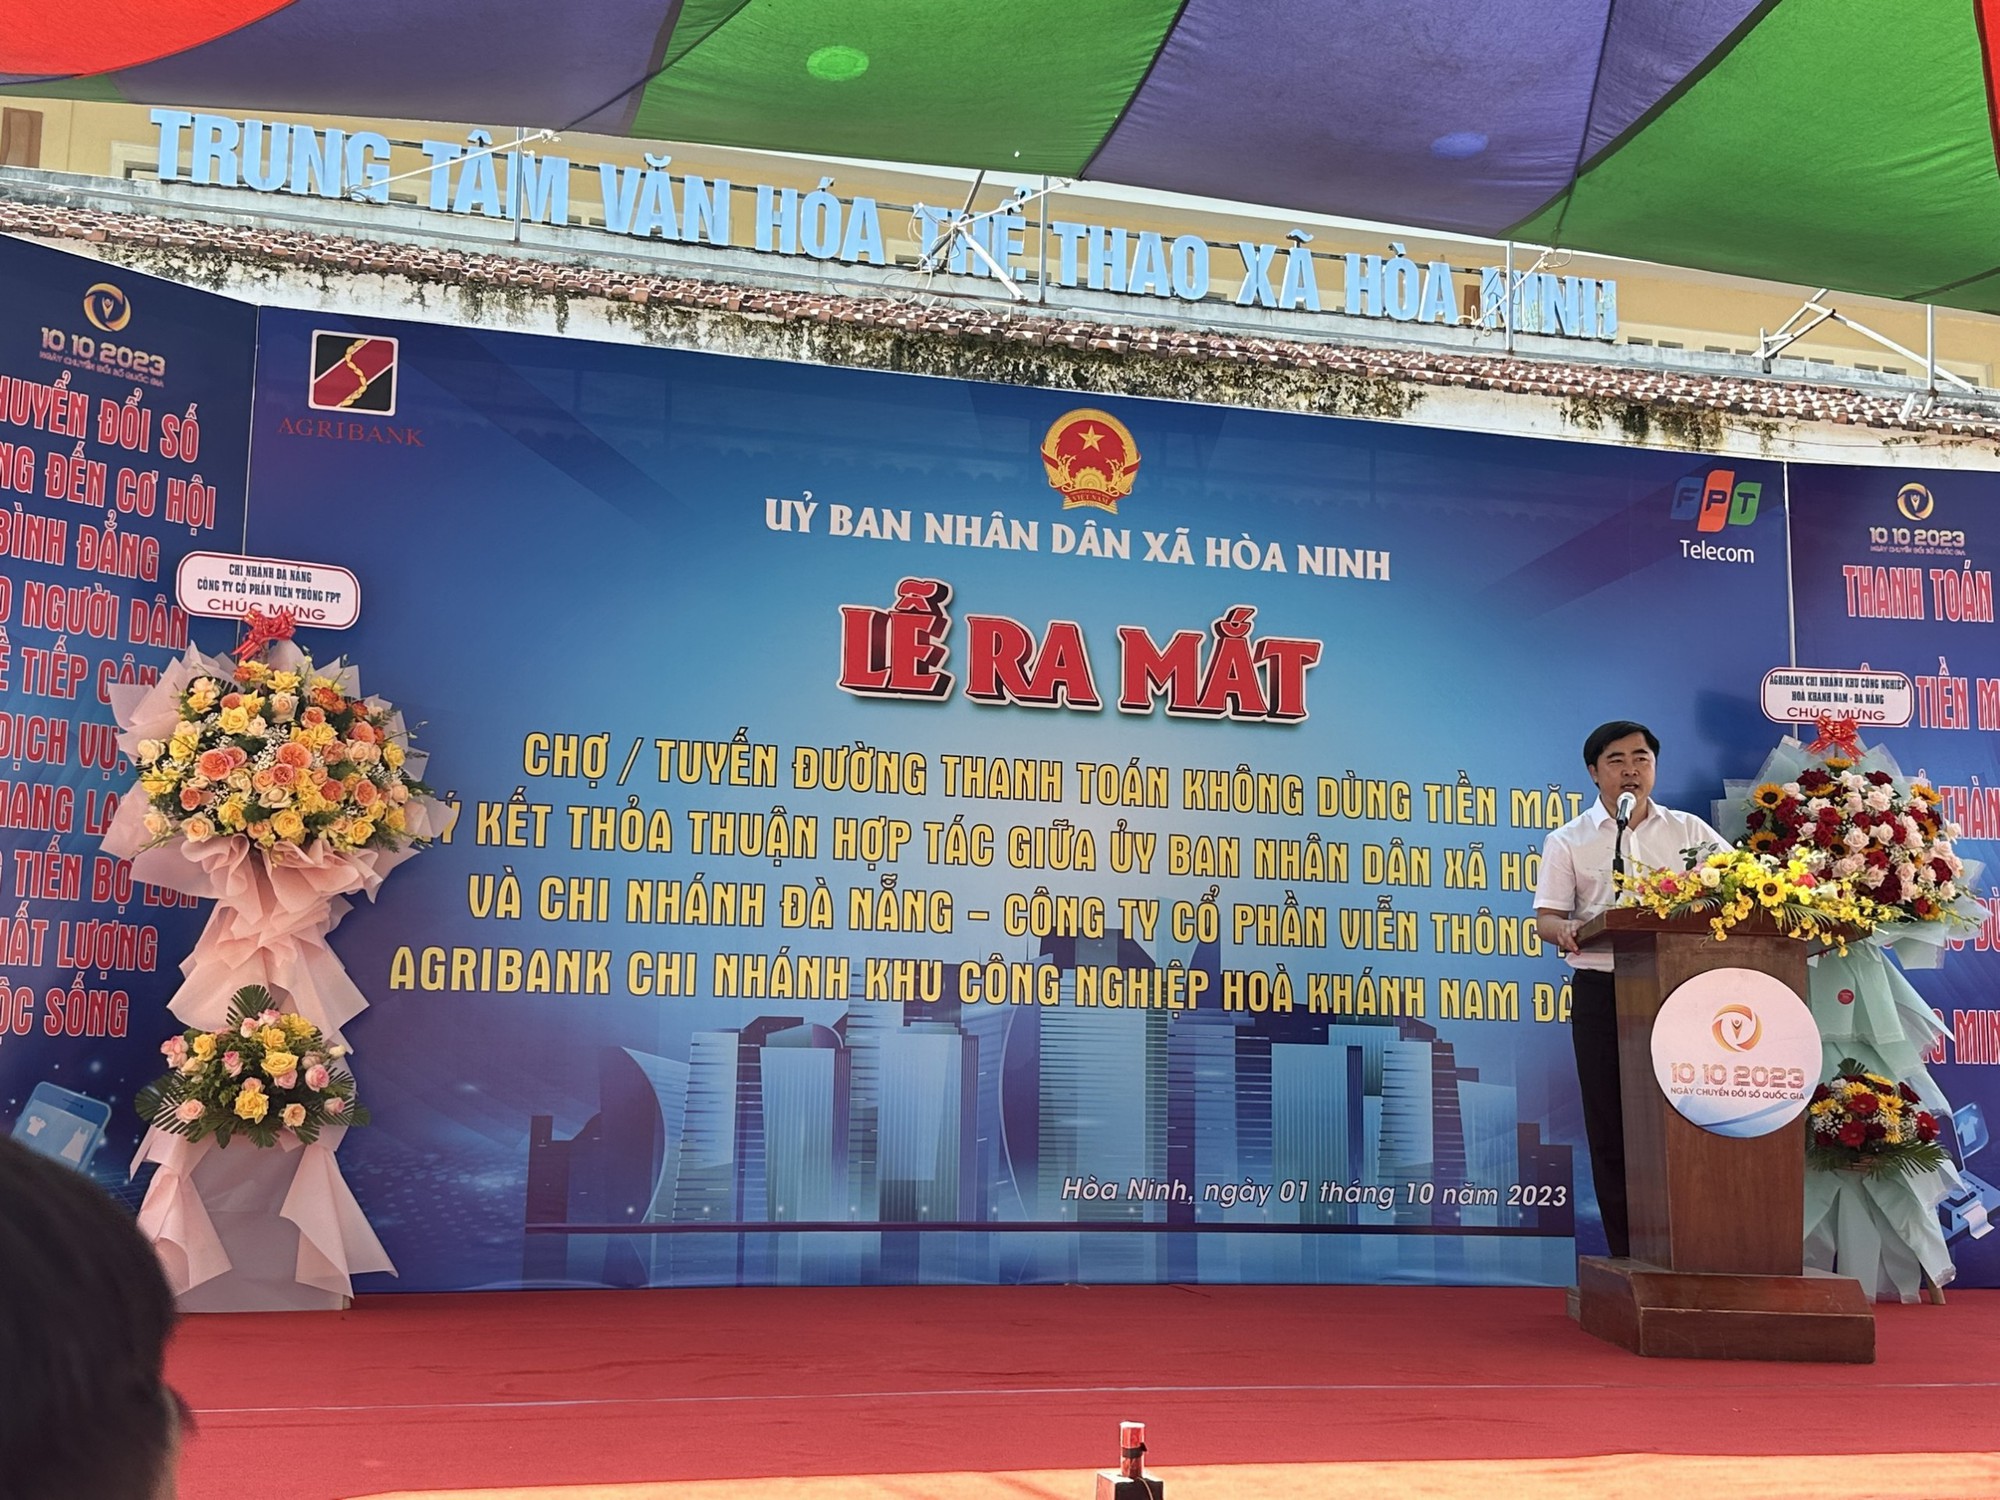 Agribank Chi nhánh KCN Hòa Khánh Nam Đà Nẵng ra mắt chợ, tuyến đường thanh toán không dùng tiền mặt - Ảnh 3.